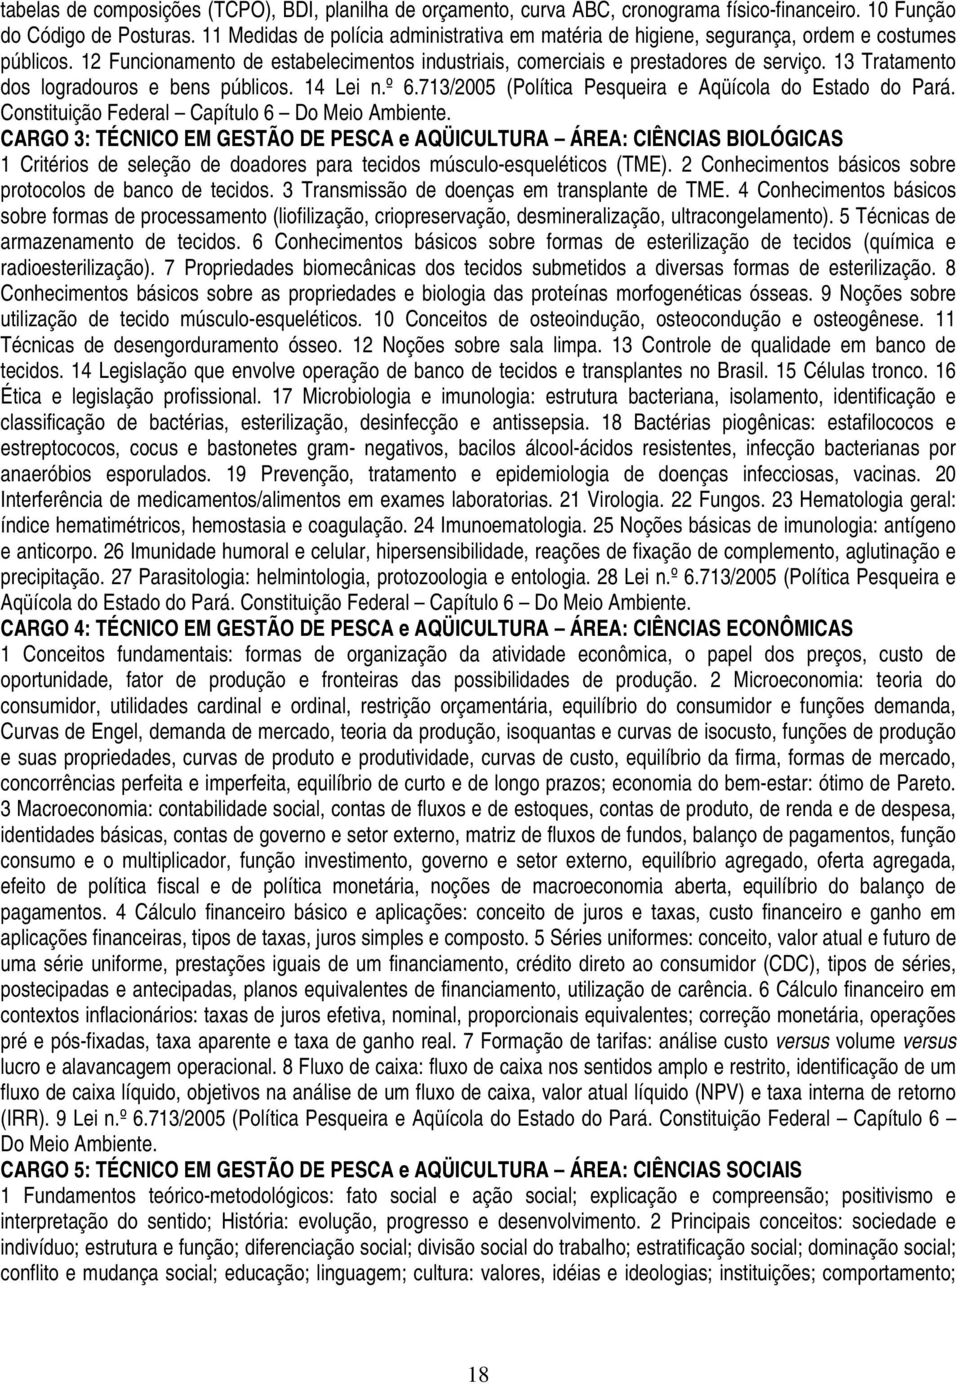 13 Tratamento dos logradouros e bens públicos. 14 Lei n.º 6.713/2005 (Política Pesqueira e Aqüícola do Estado do Pará. Constituição Federal Capítulo 6 Do Meio Ambiente.